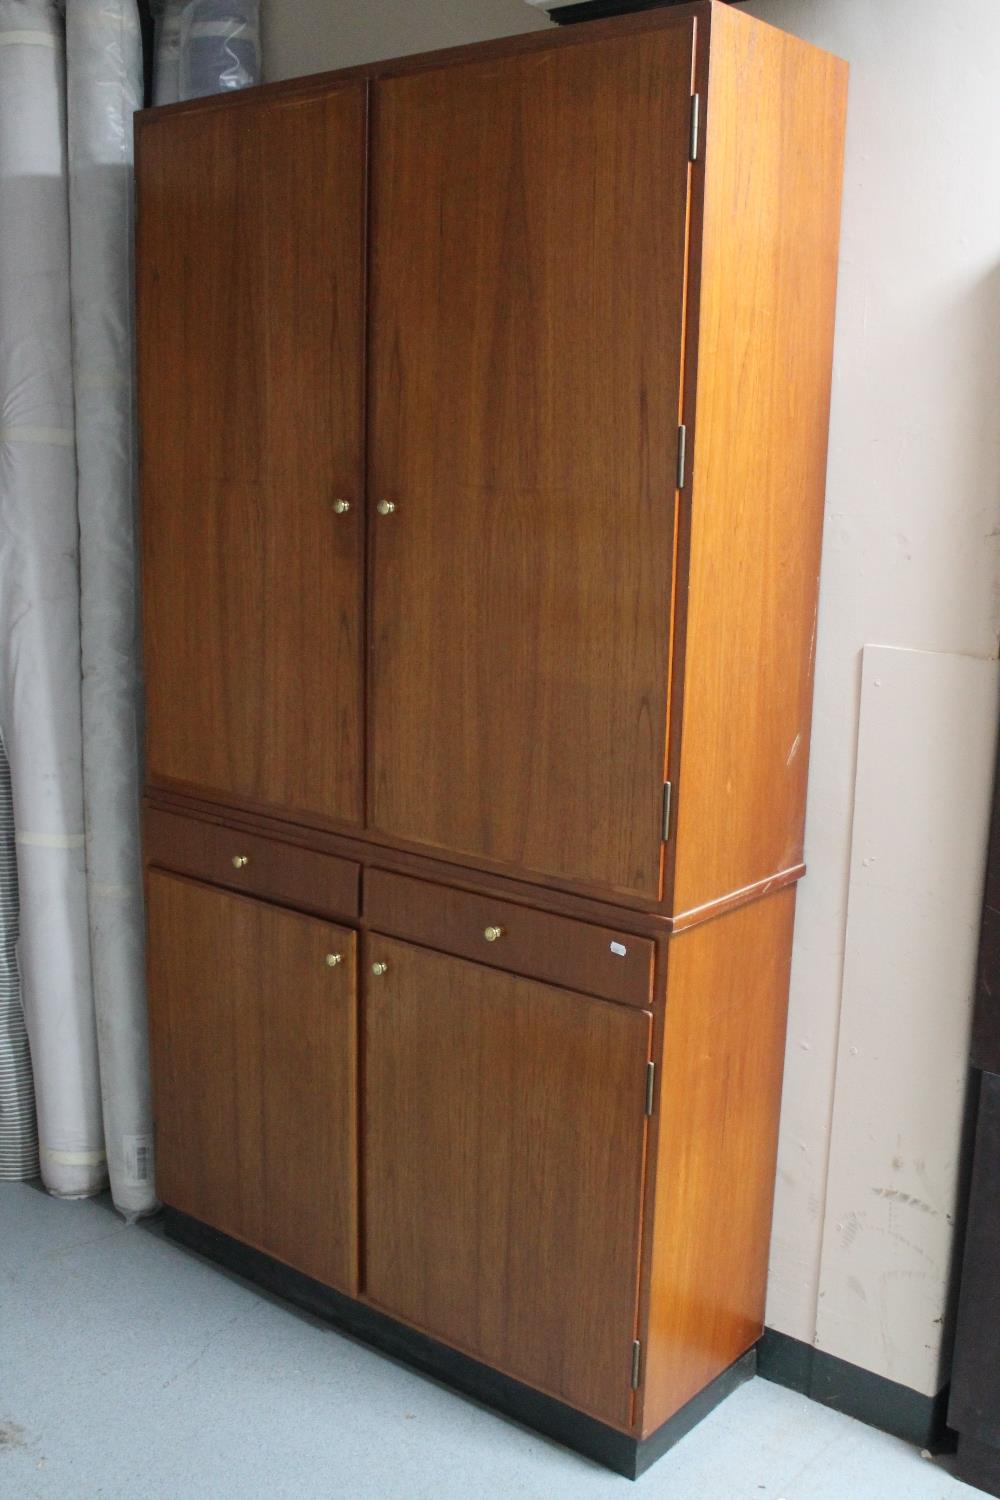 A teak double door cupboard